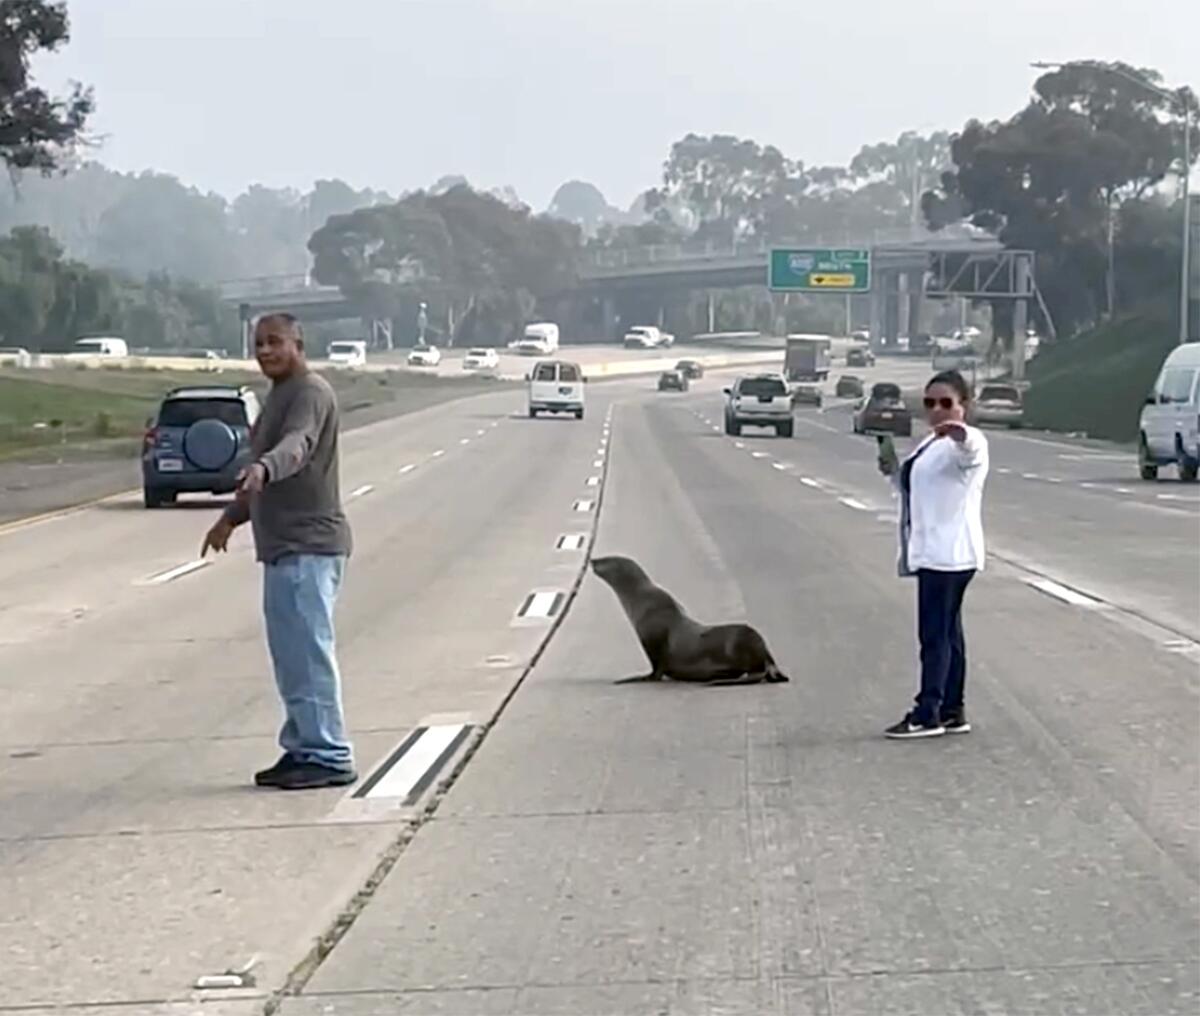 Sea lion found on San Diego freeway